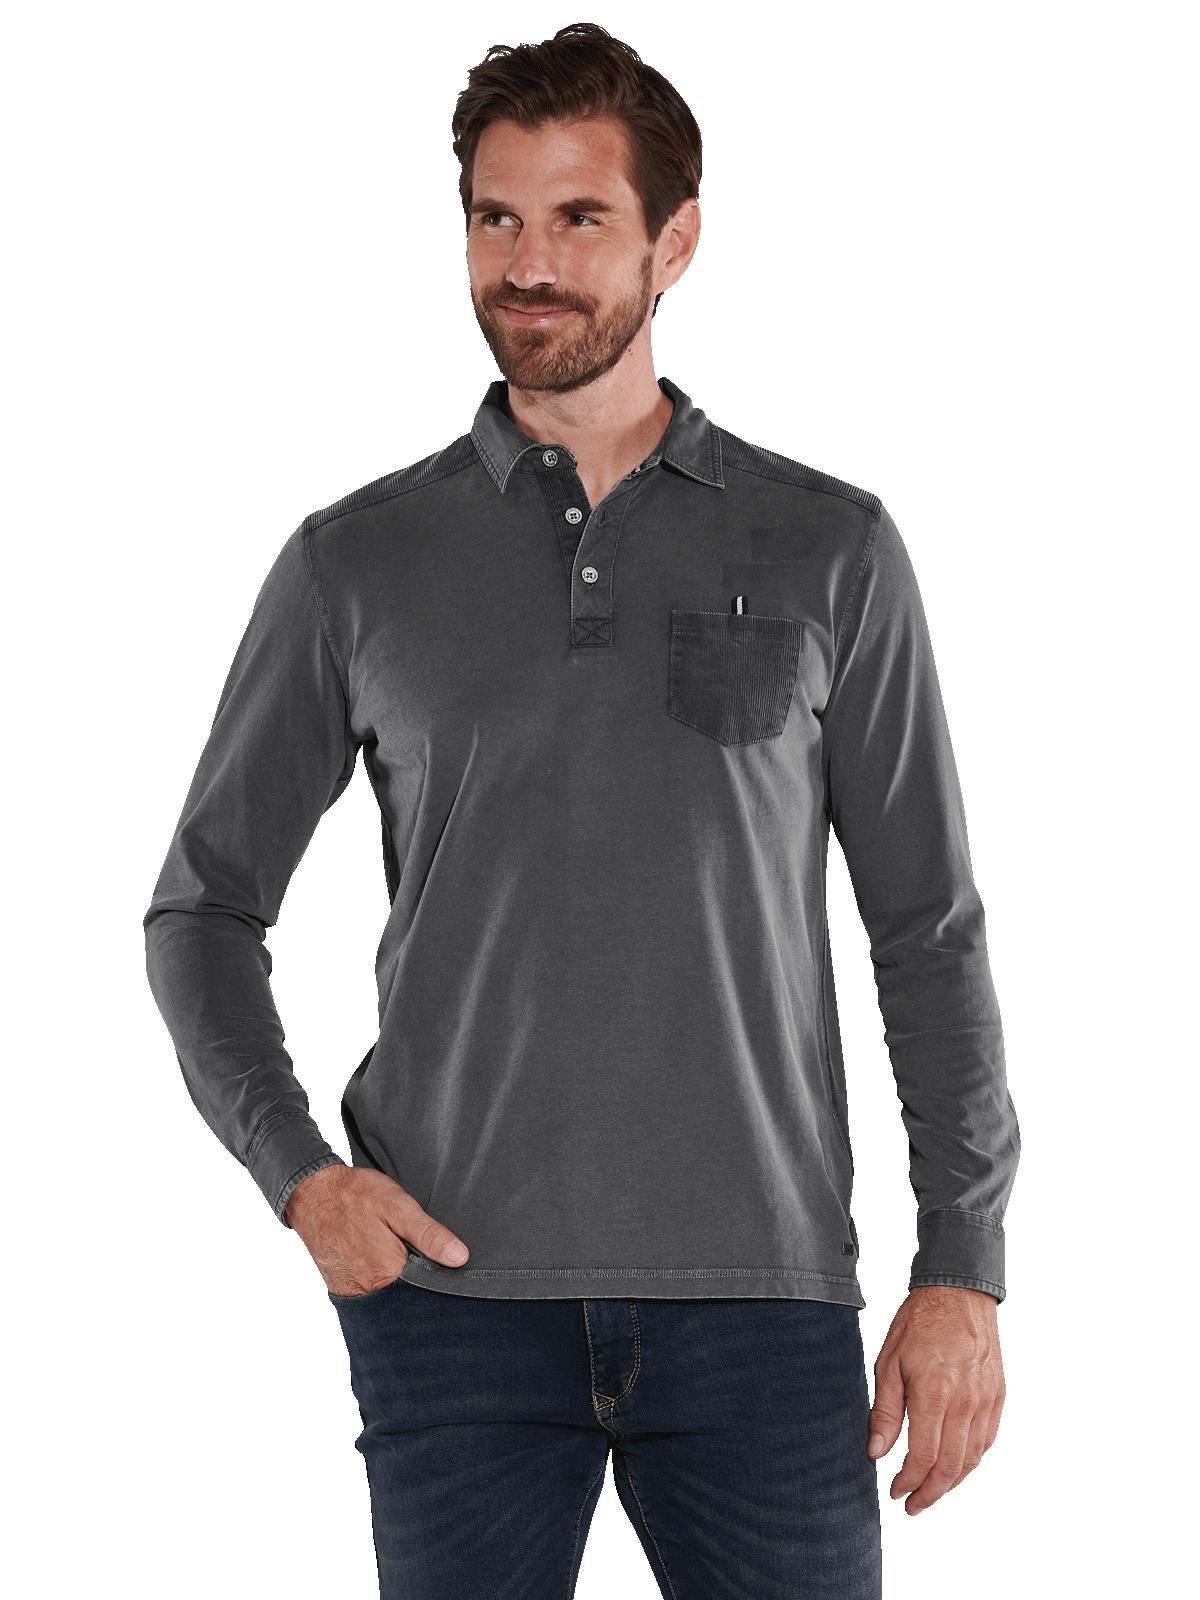 Golf Langarm Poloshirts für Herren online kaufen | OTTO | Poloshirts